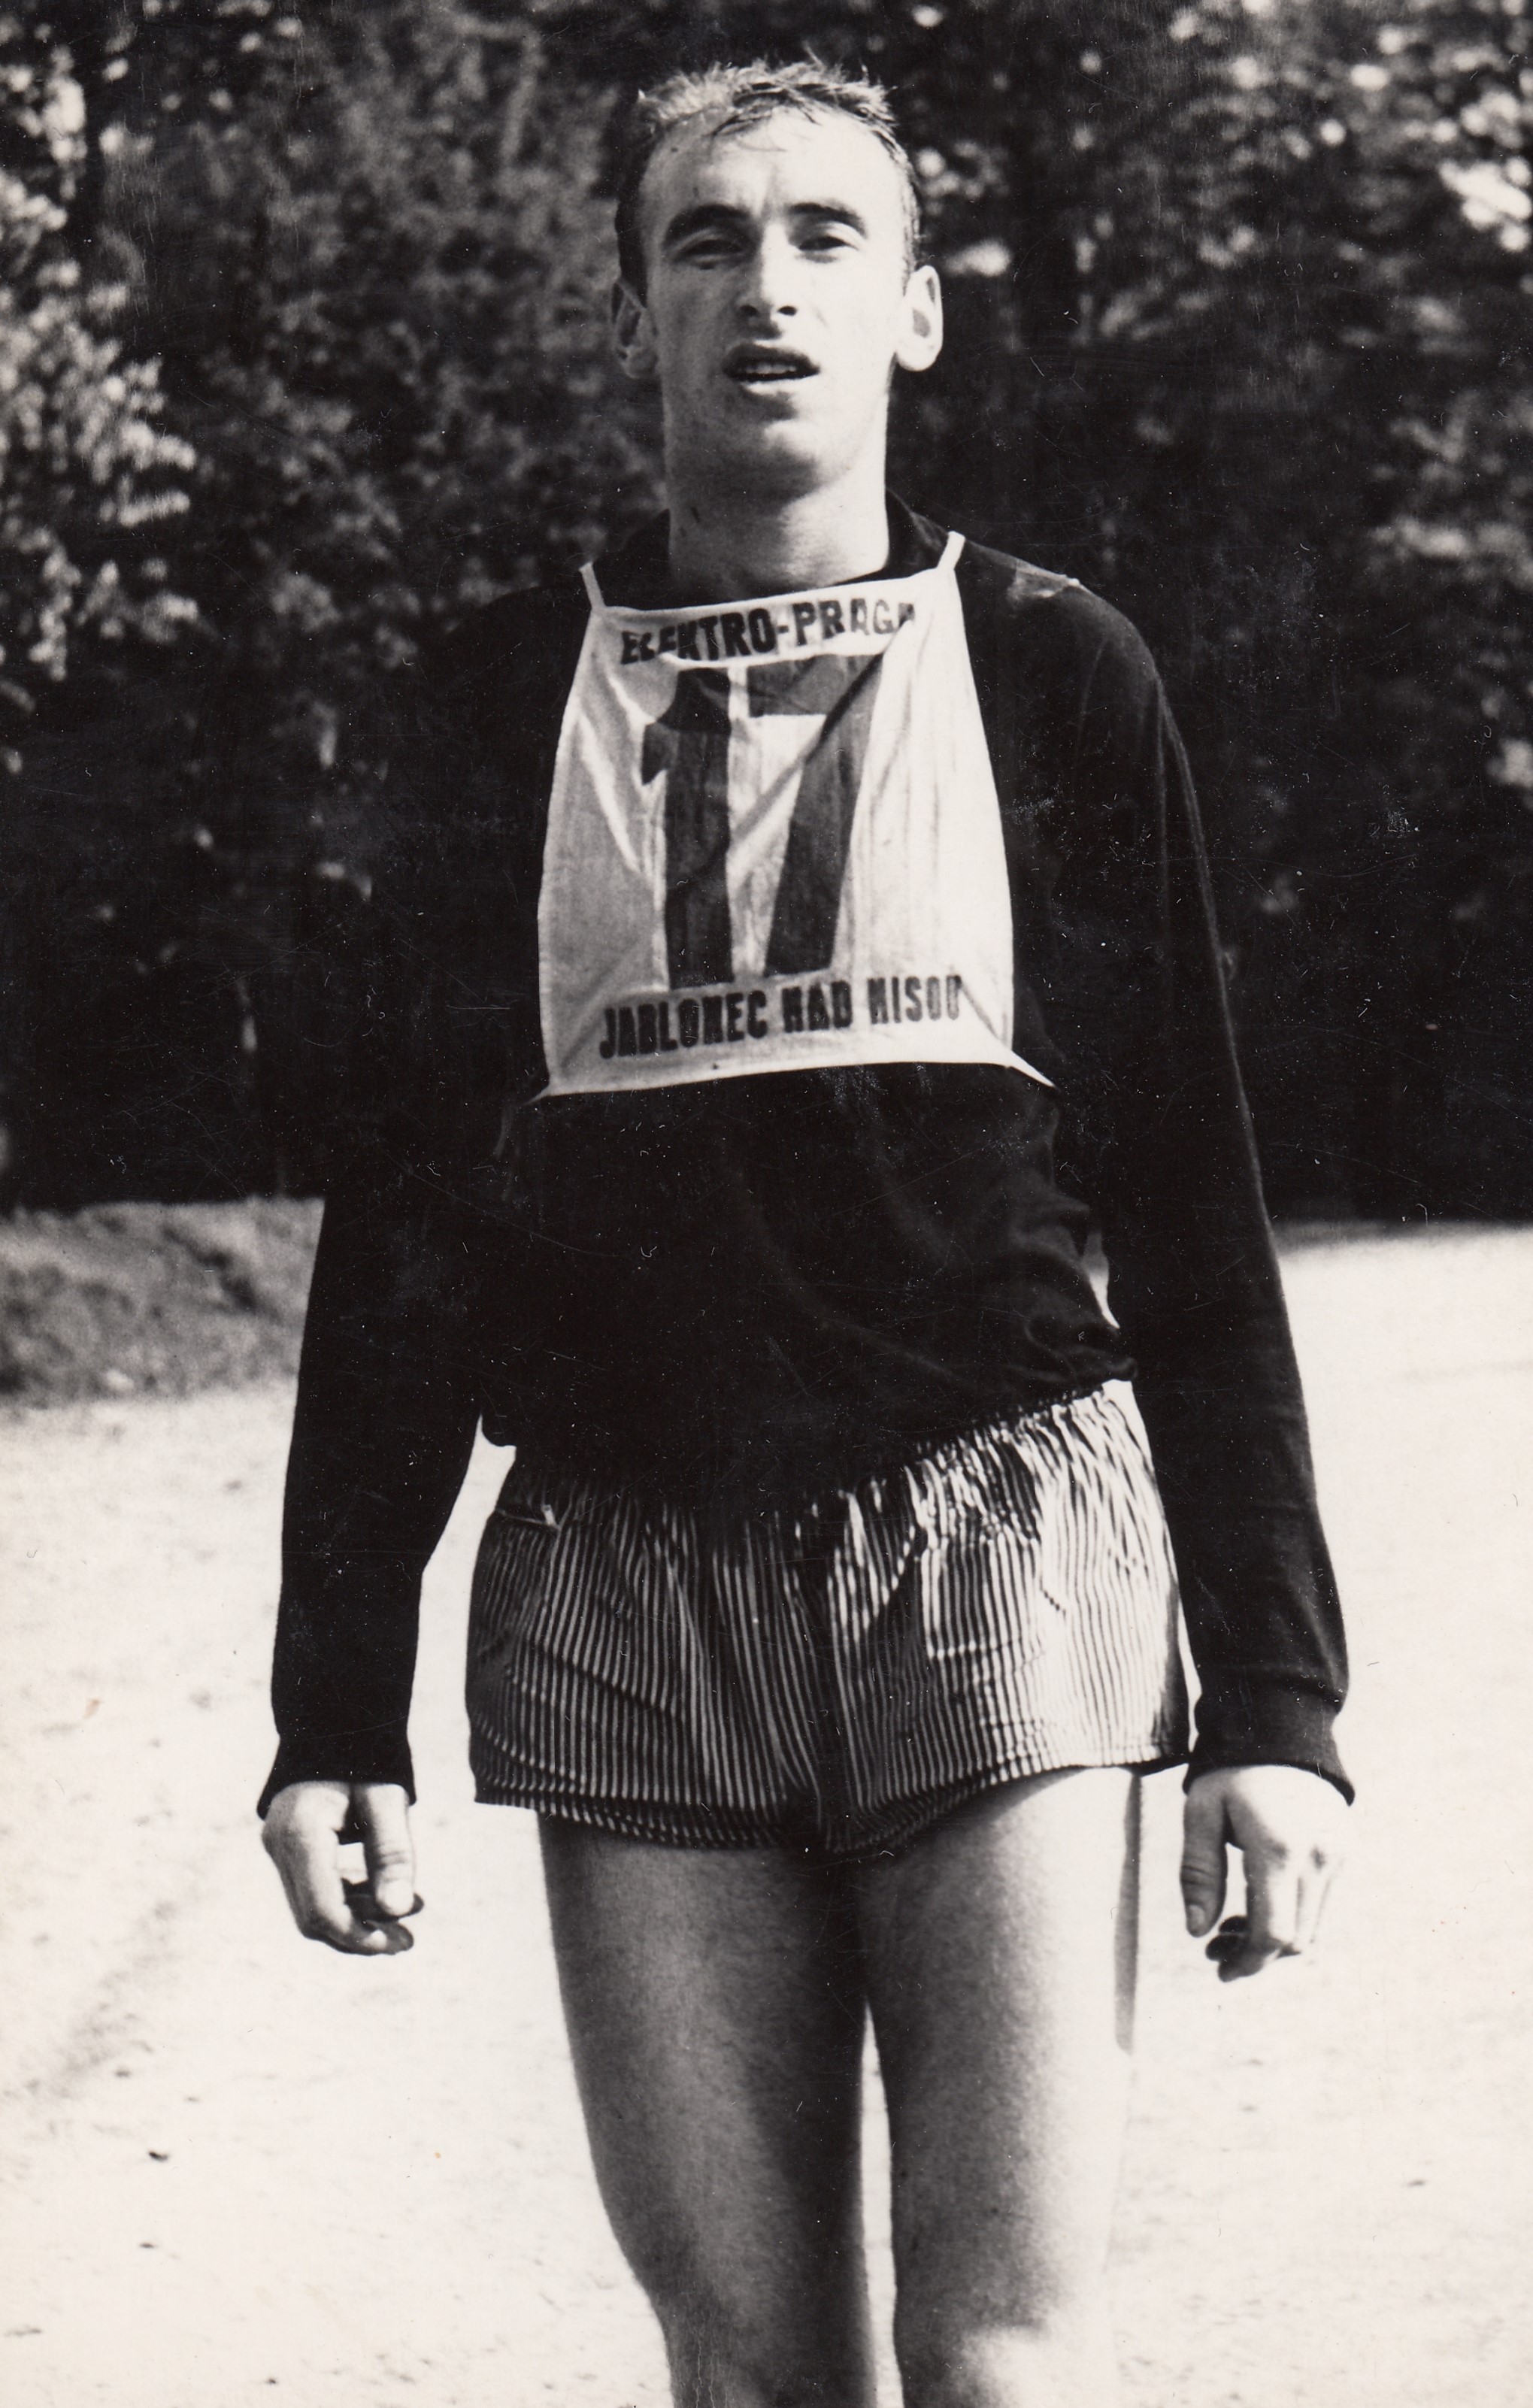 Při běžeckém závodě, kolem roku 1967